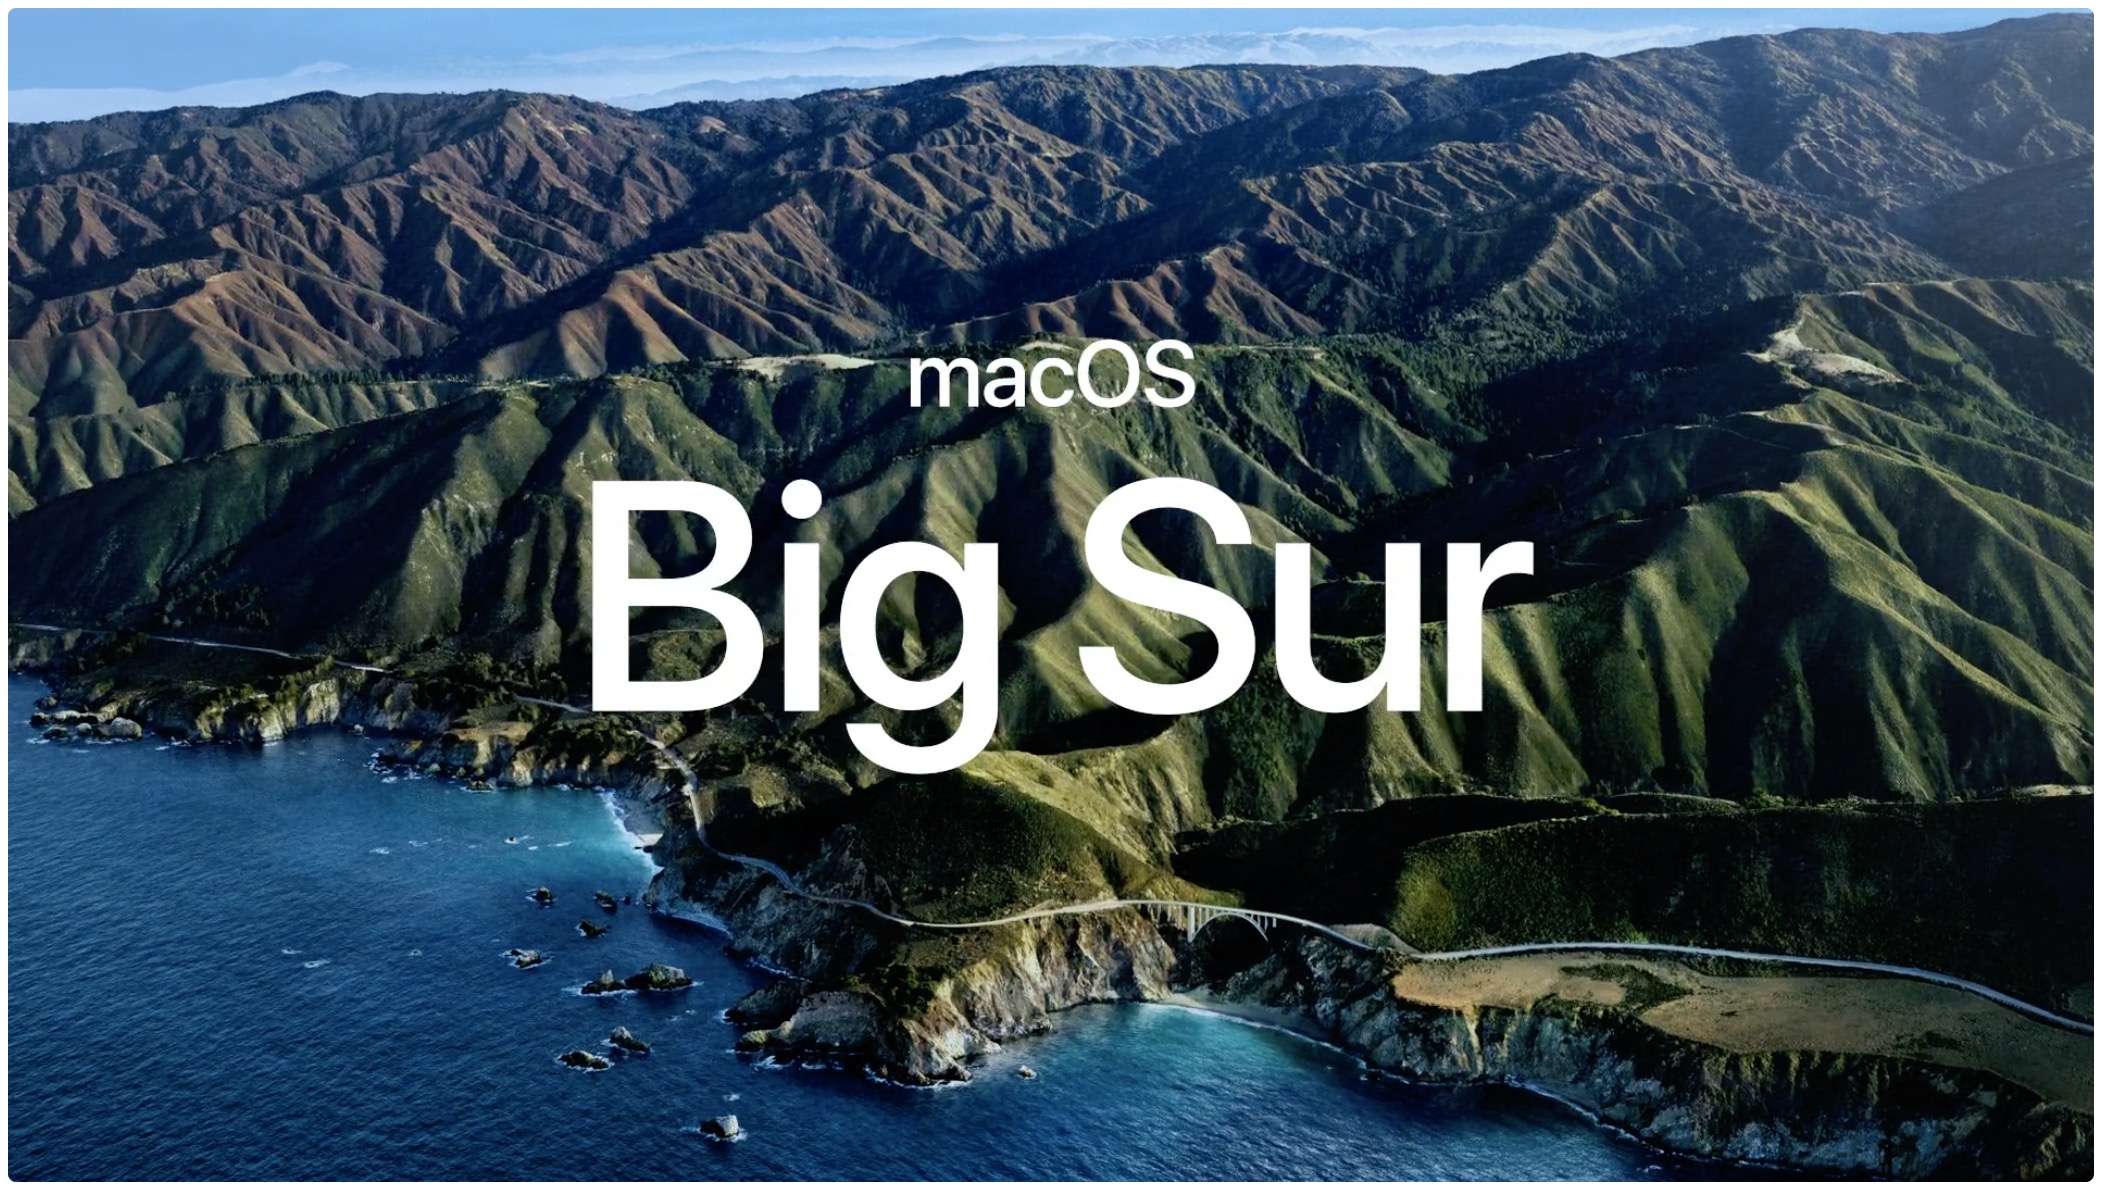 Het promotionele beeld van Apple voor de macOS Big Sur-software-update voor Mac-computers